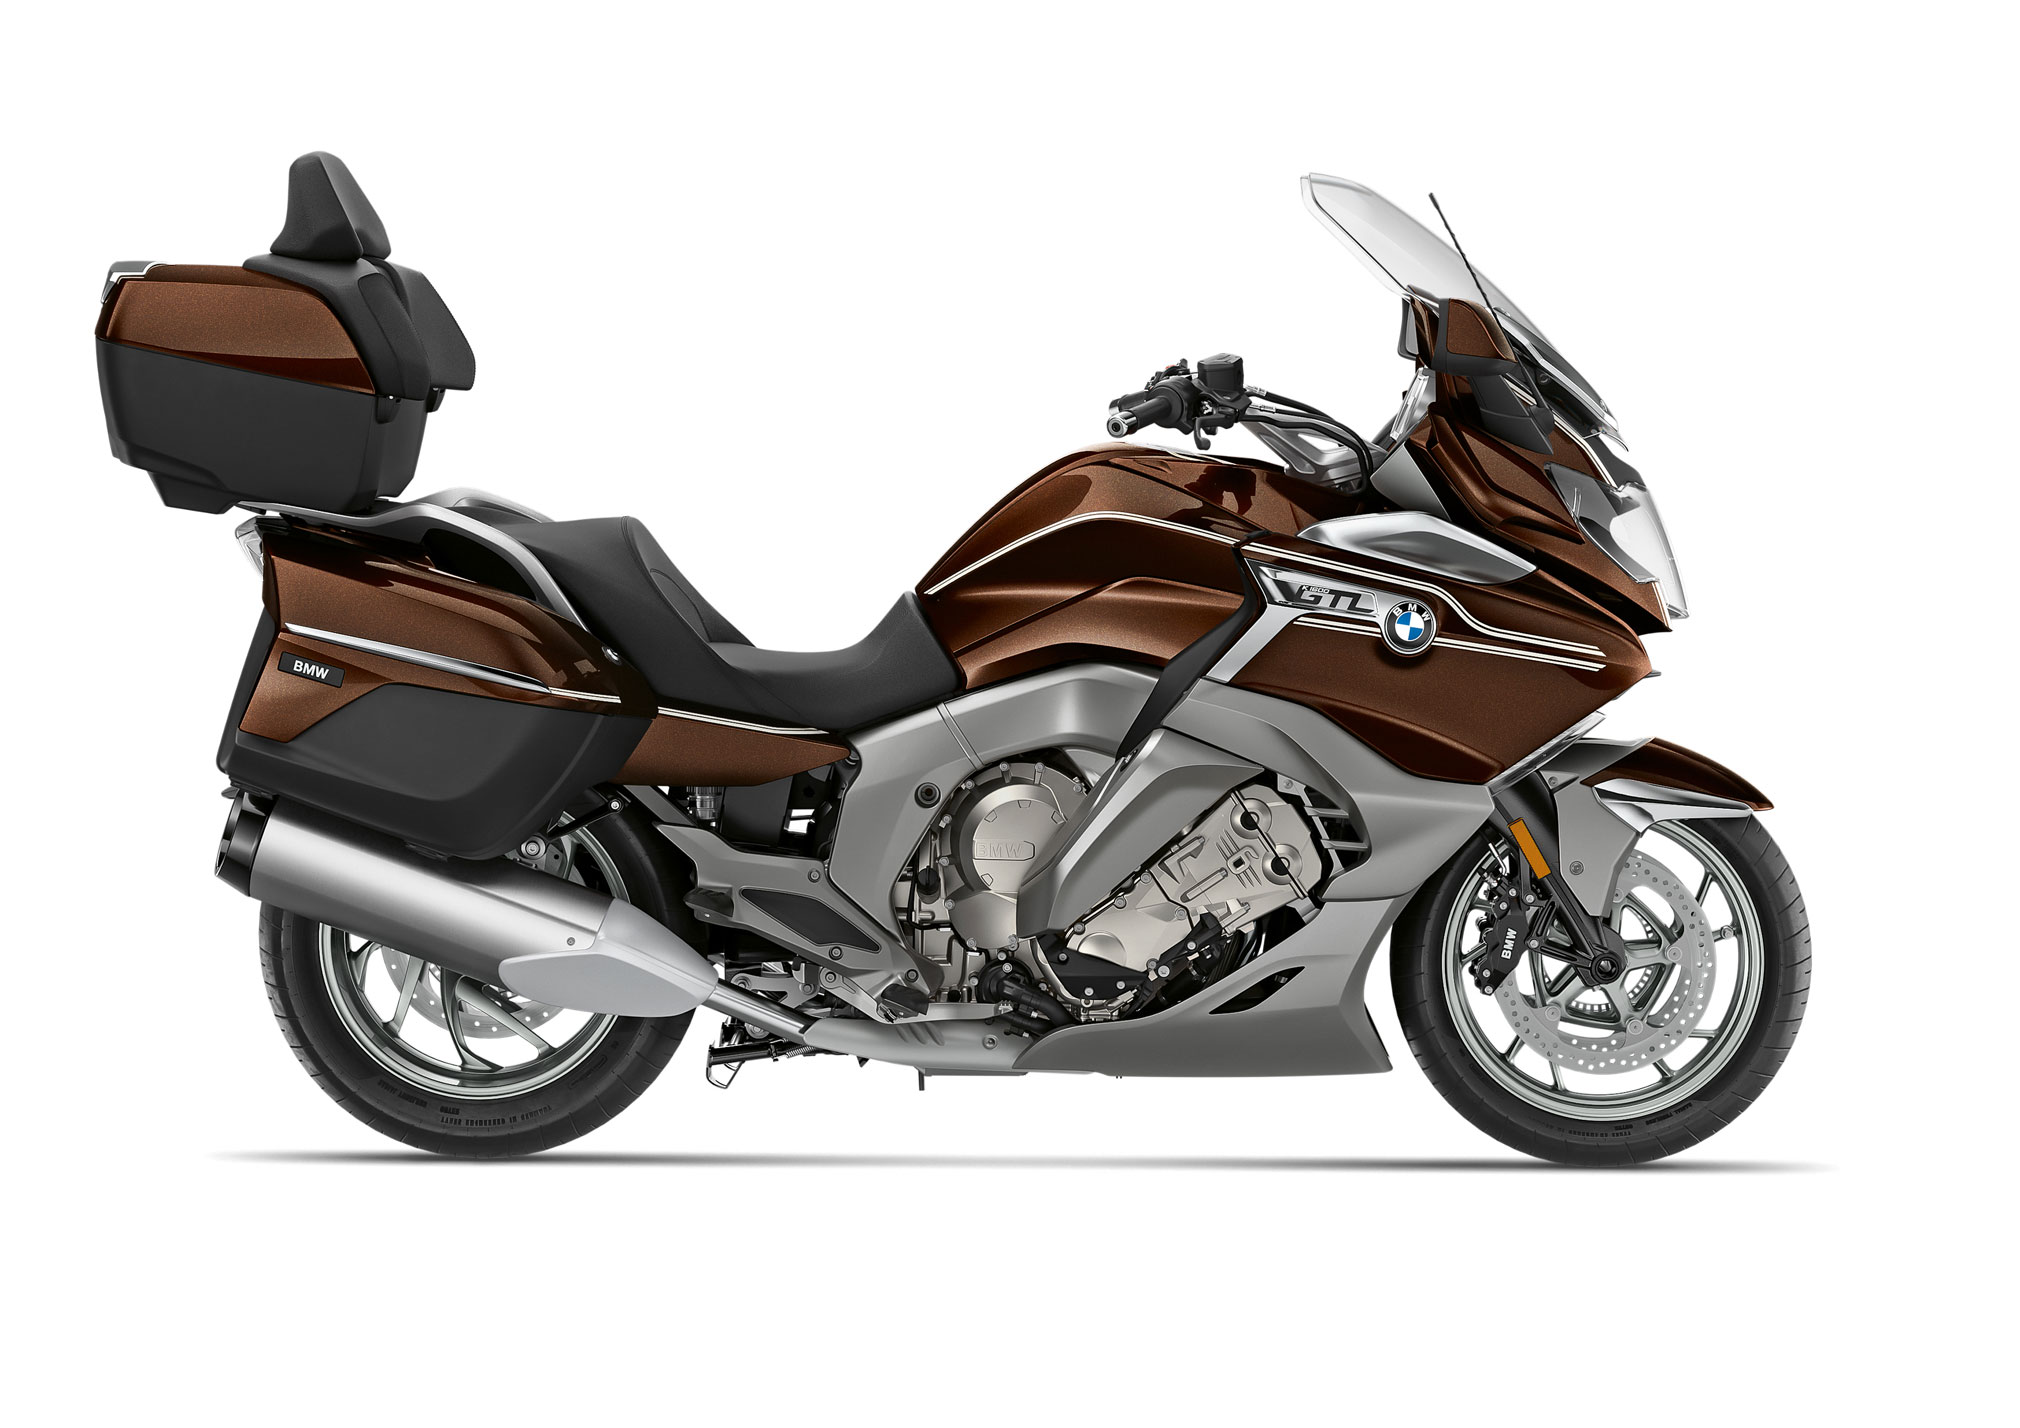 2020 BMW K1600GTL Guide • Total Motorcycle